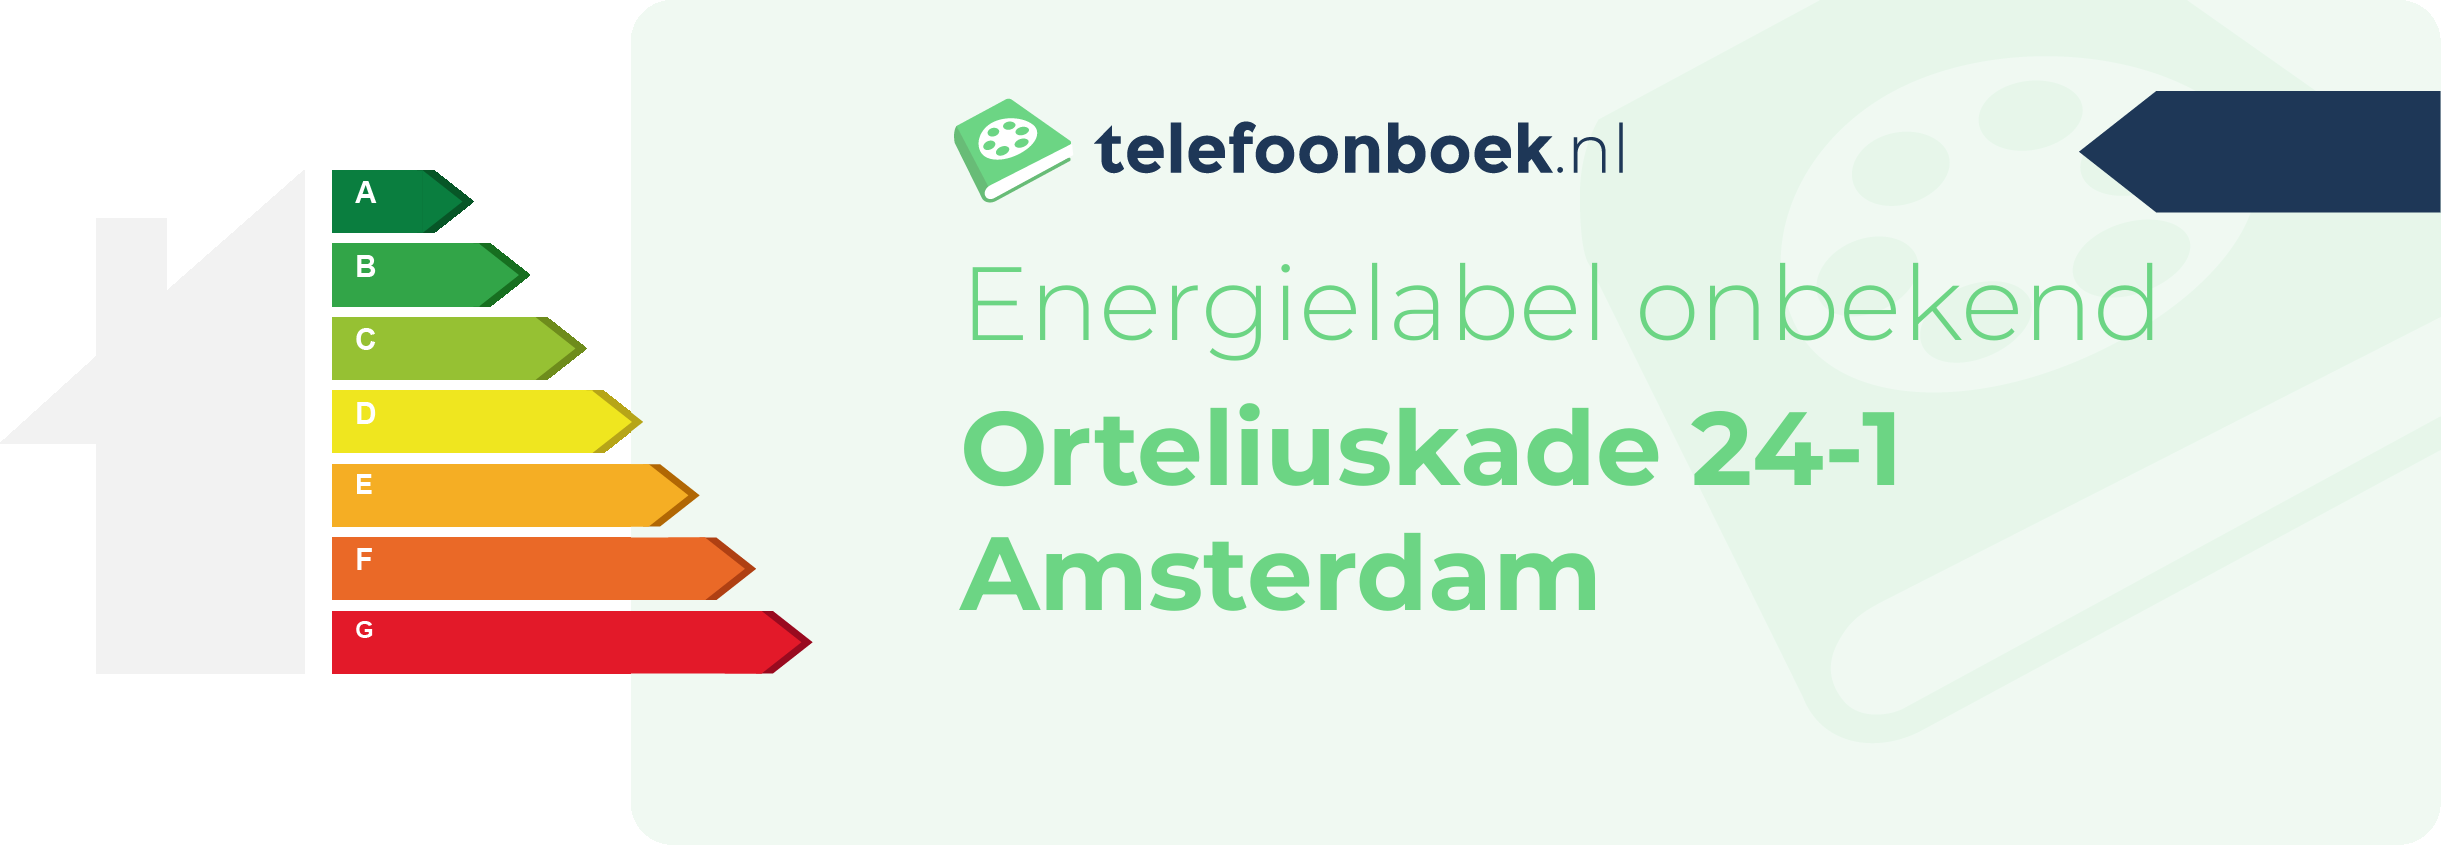 Energielabel Orteliuskade 24-1 Amsterdam